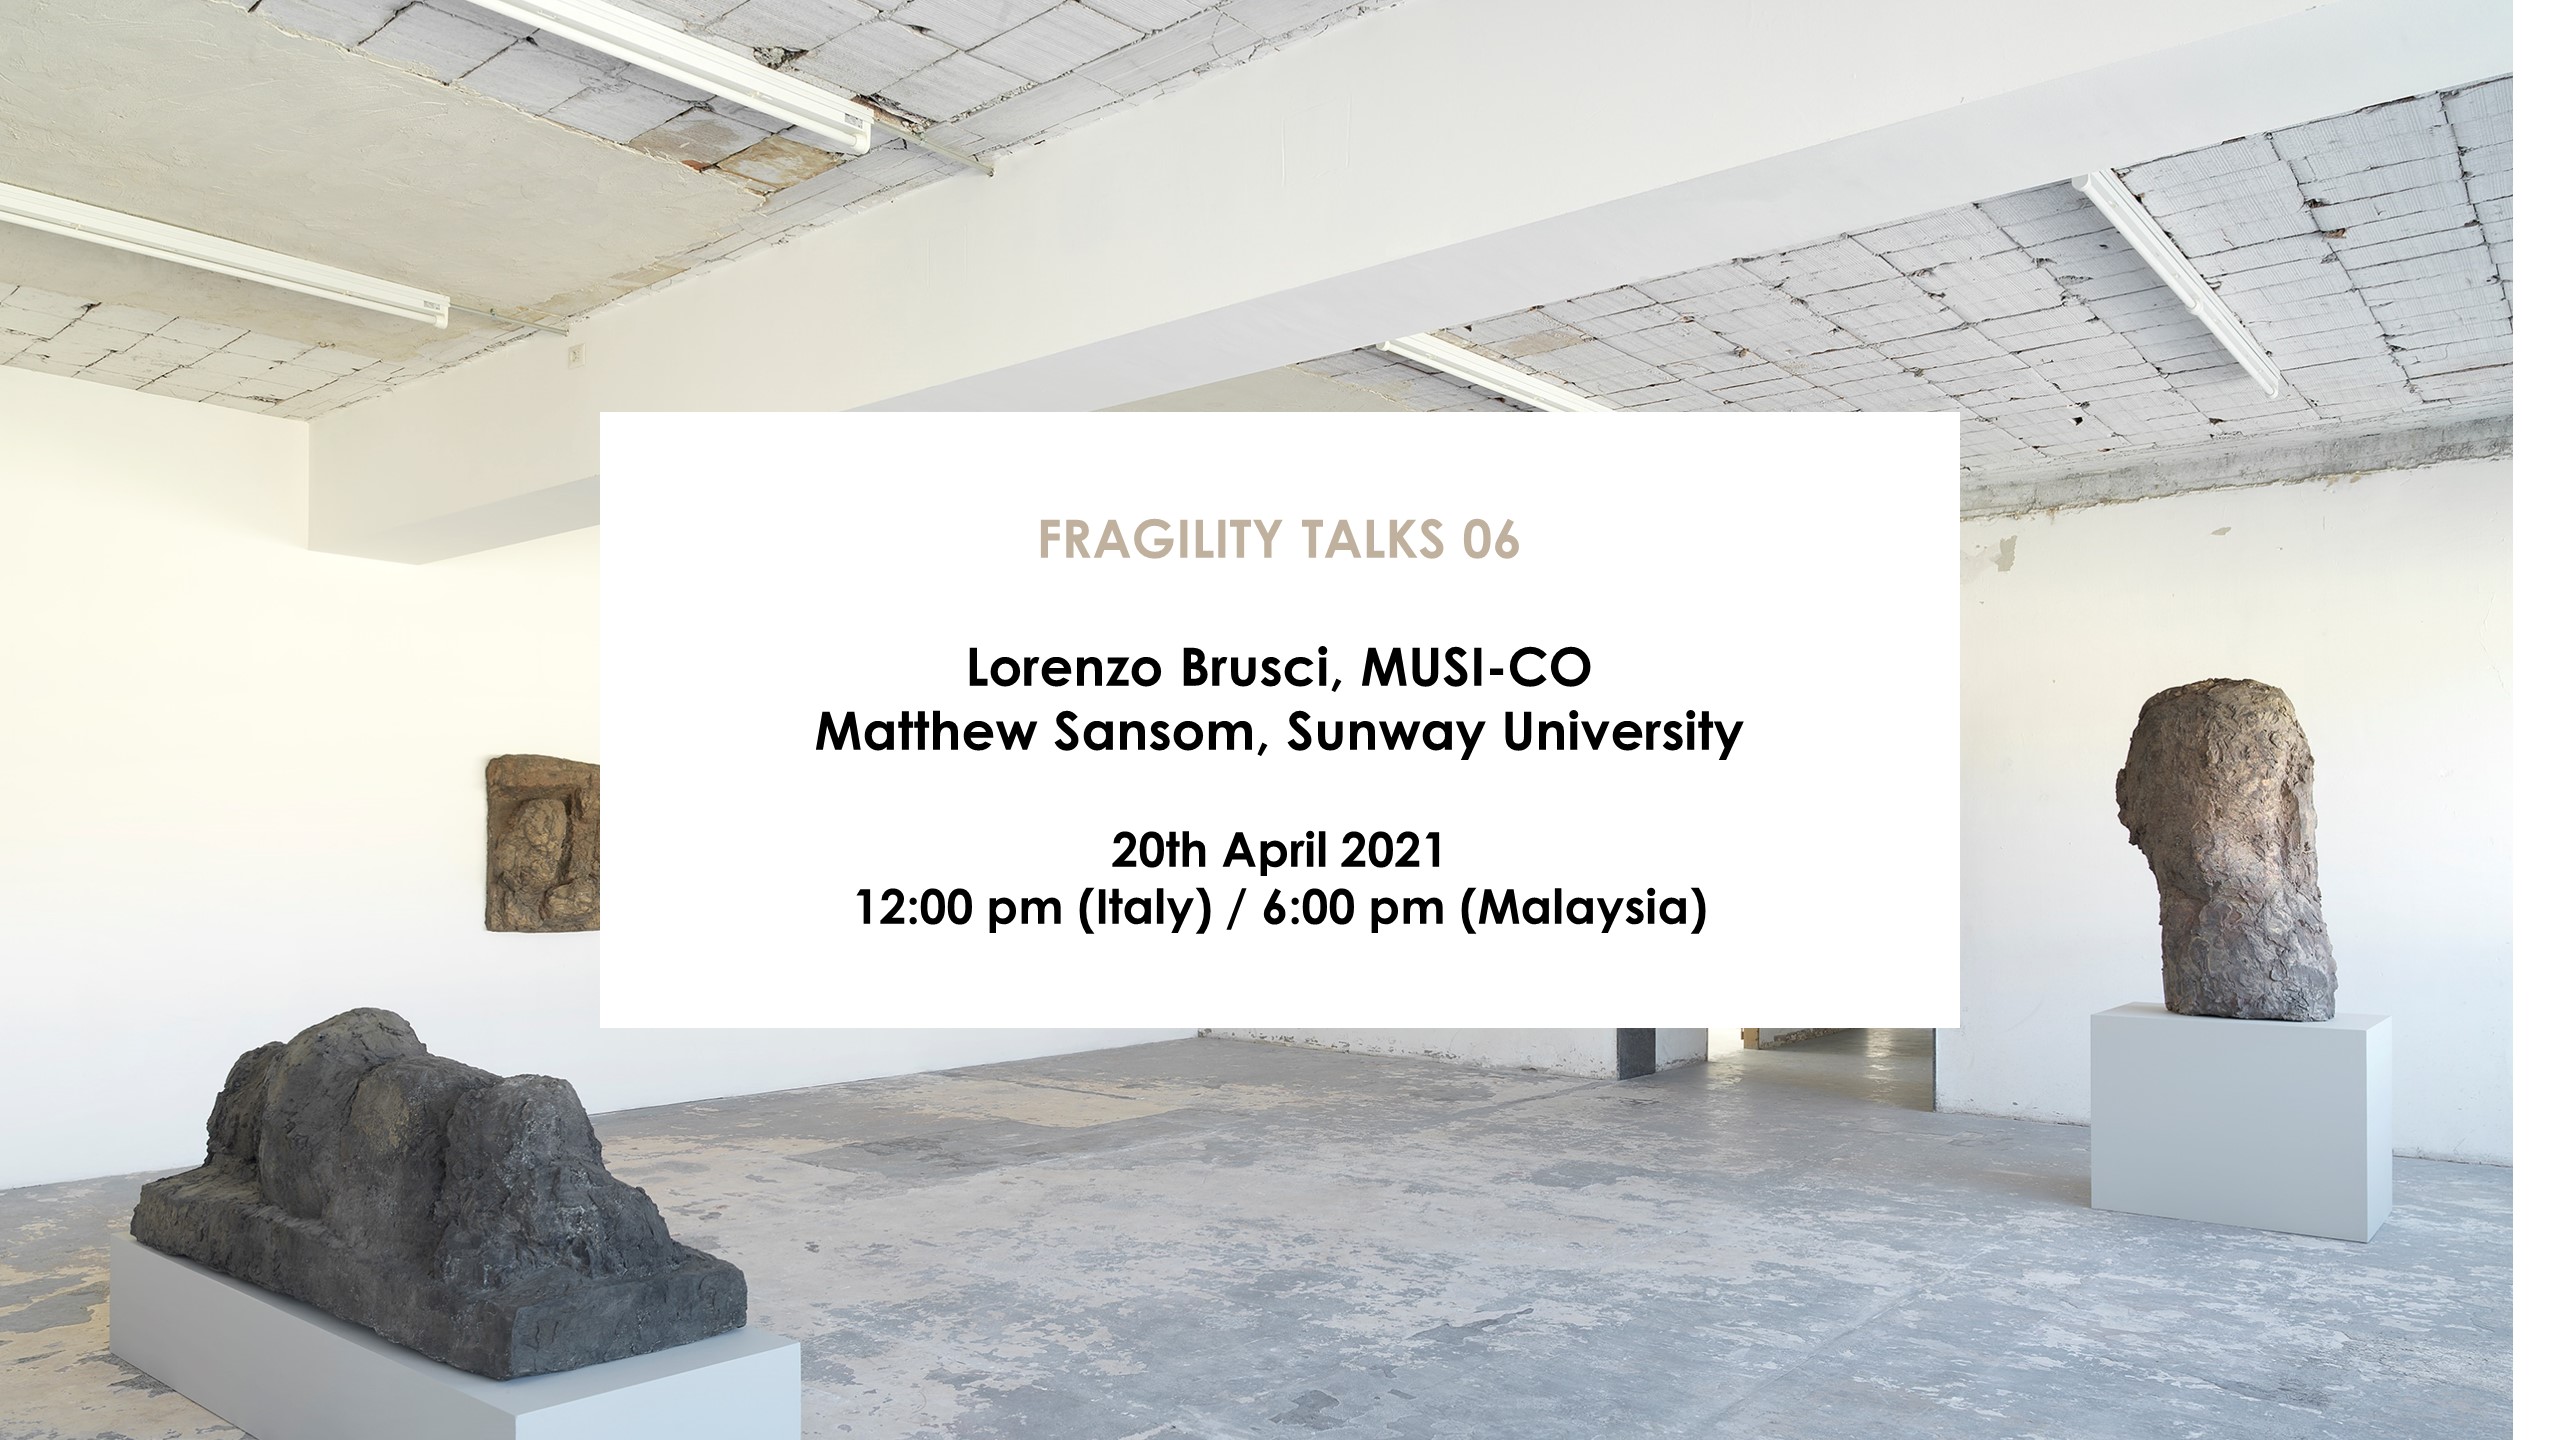 Fragility Talks 06 - Fondazione ICA Milano